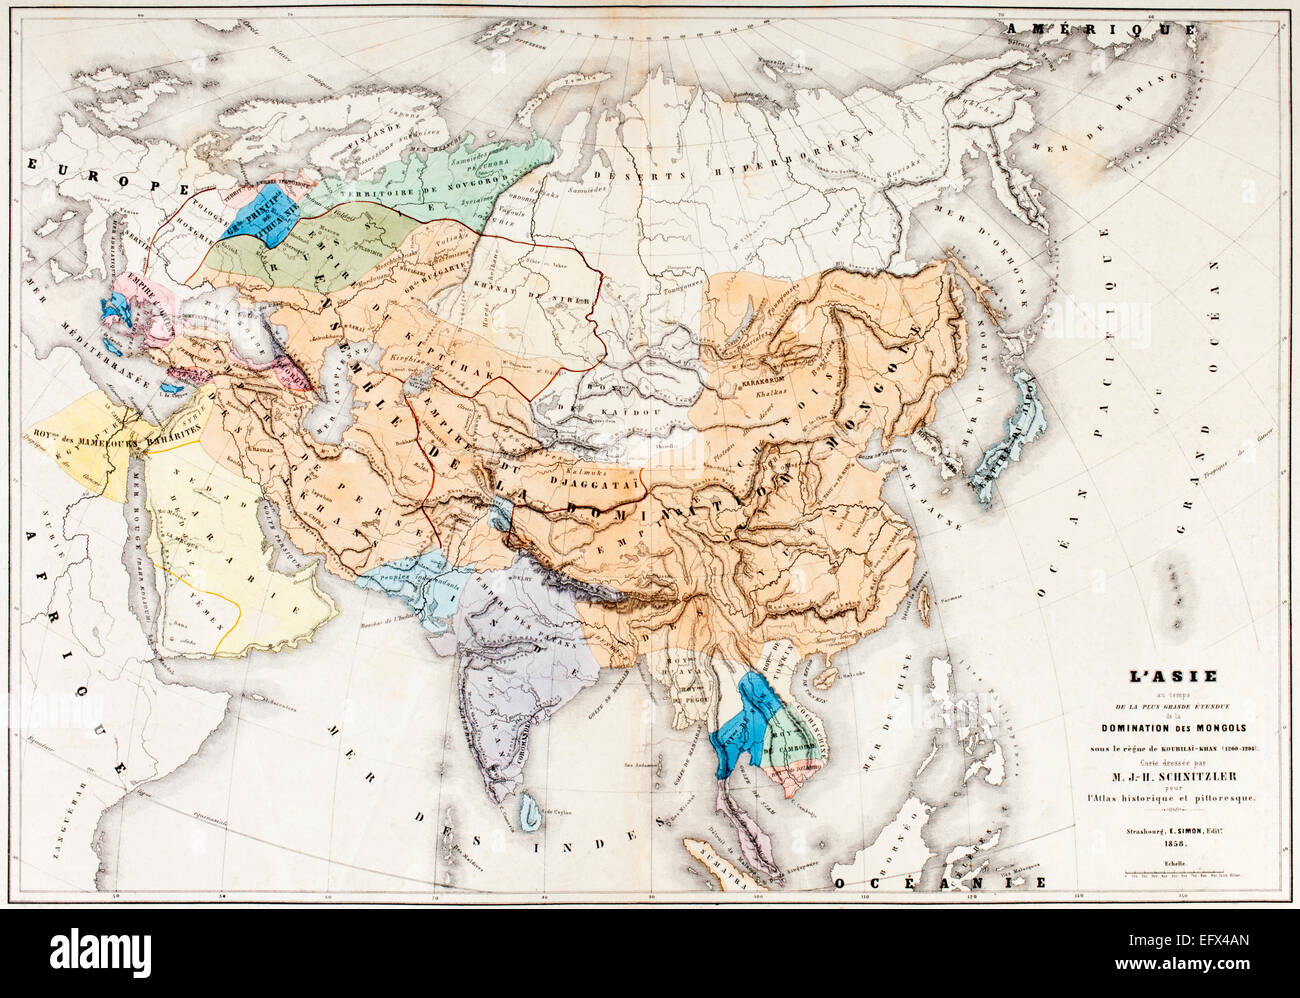 Carte de l'Asie à l'époque de la plus grande mesure de la domination des Mongols dans le règne de Kublai Khan. Né en 1215, il régna de 1260 jusqu'à sa mort en 1294. Banque D'Images